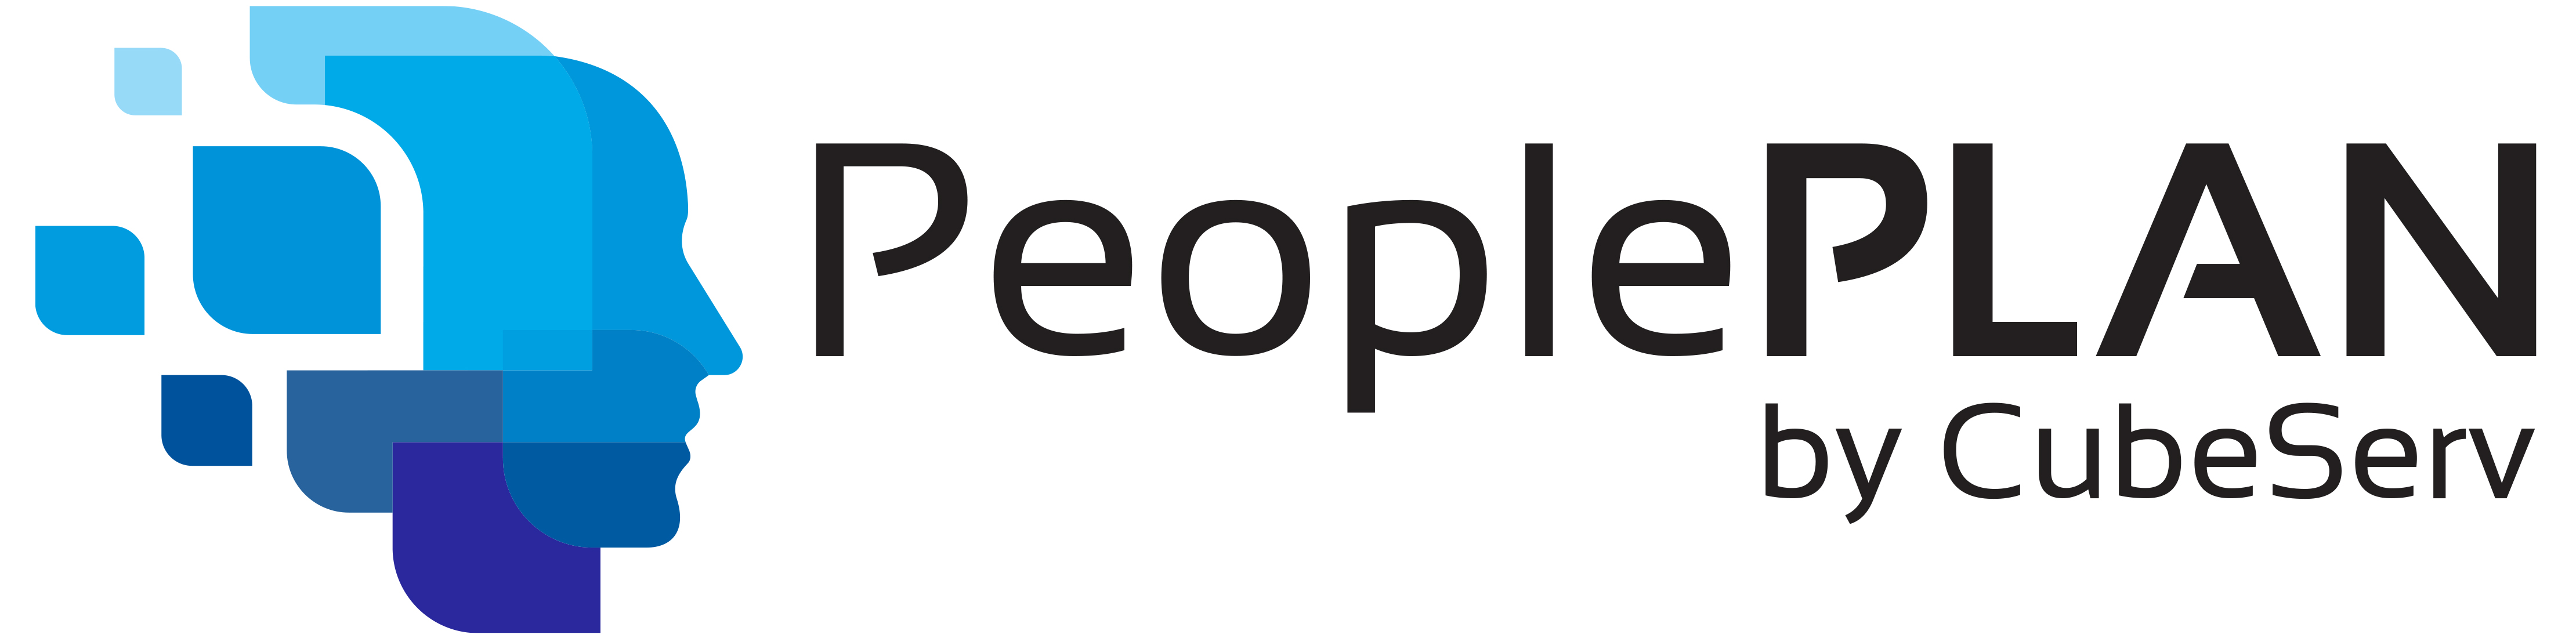 PeoplePLAN Logo v2 300dpi